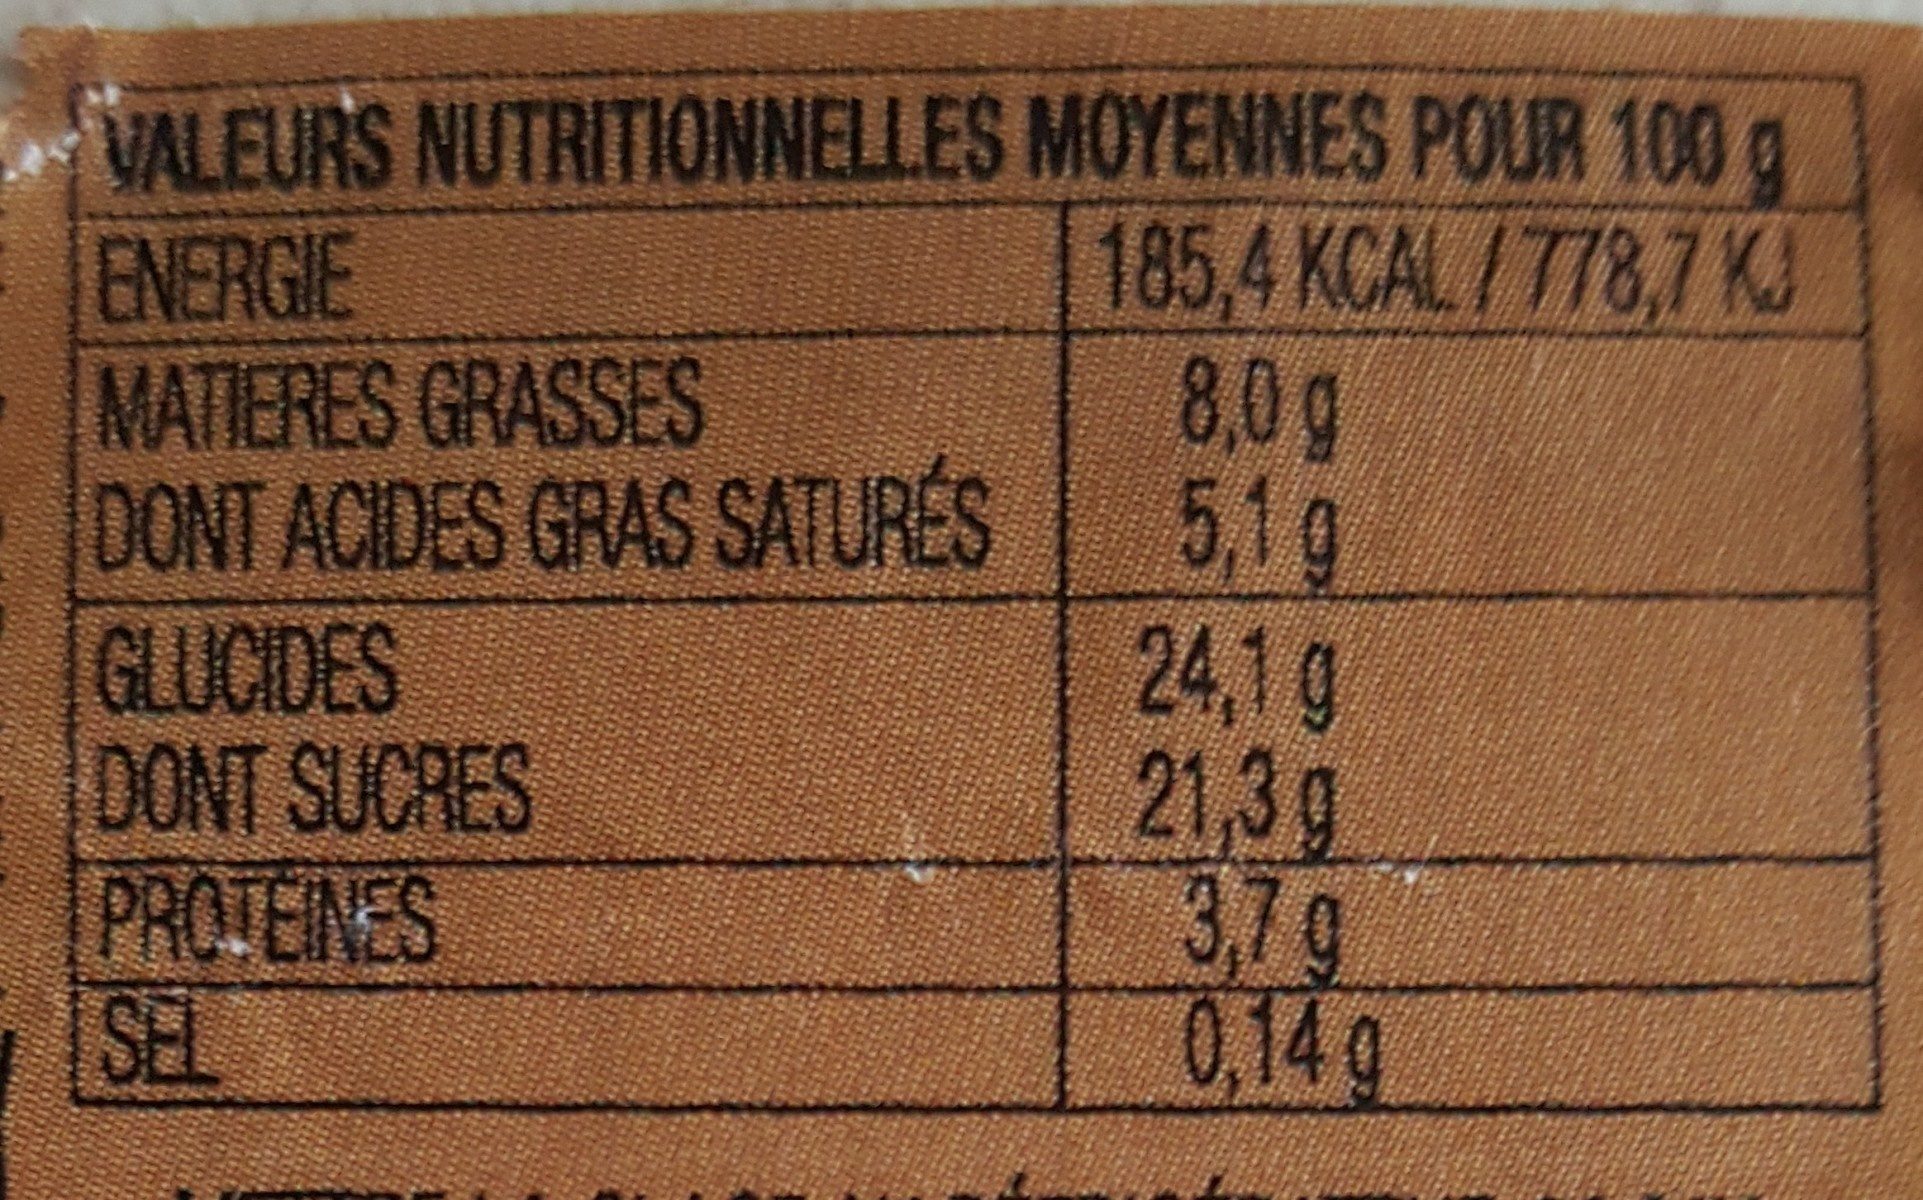 CRÈME GLACÉE CAFE - Ingredients - fr